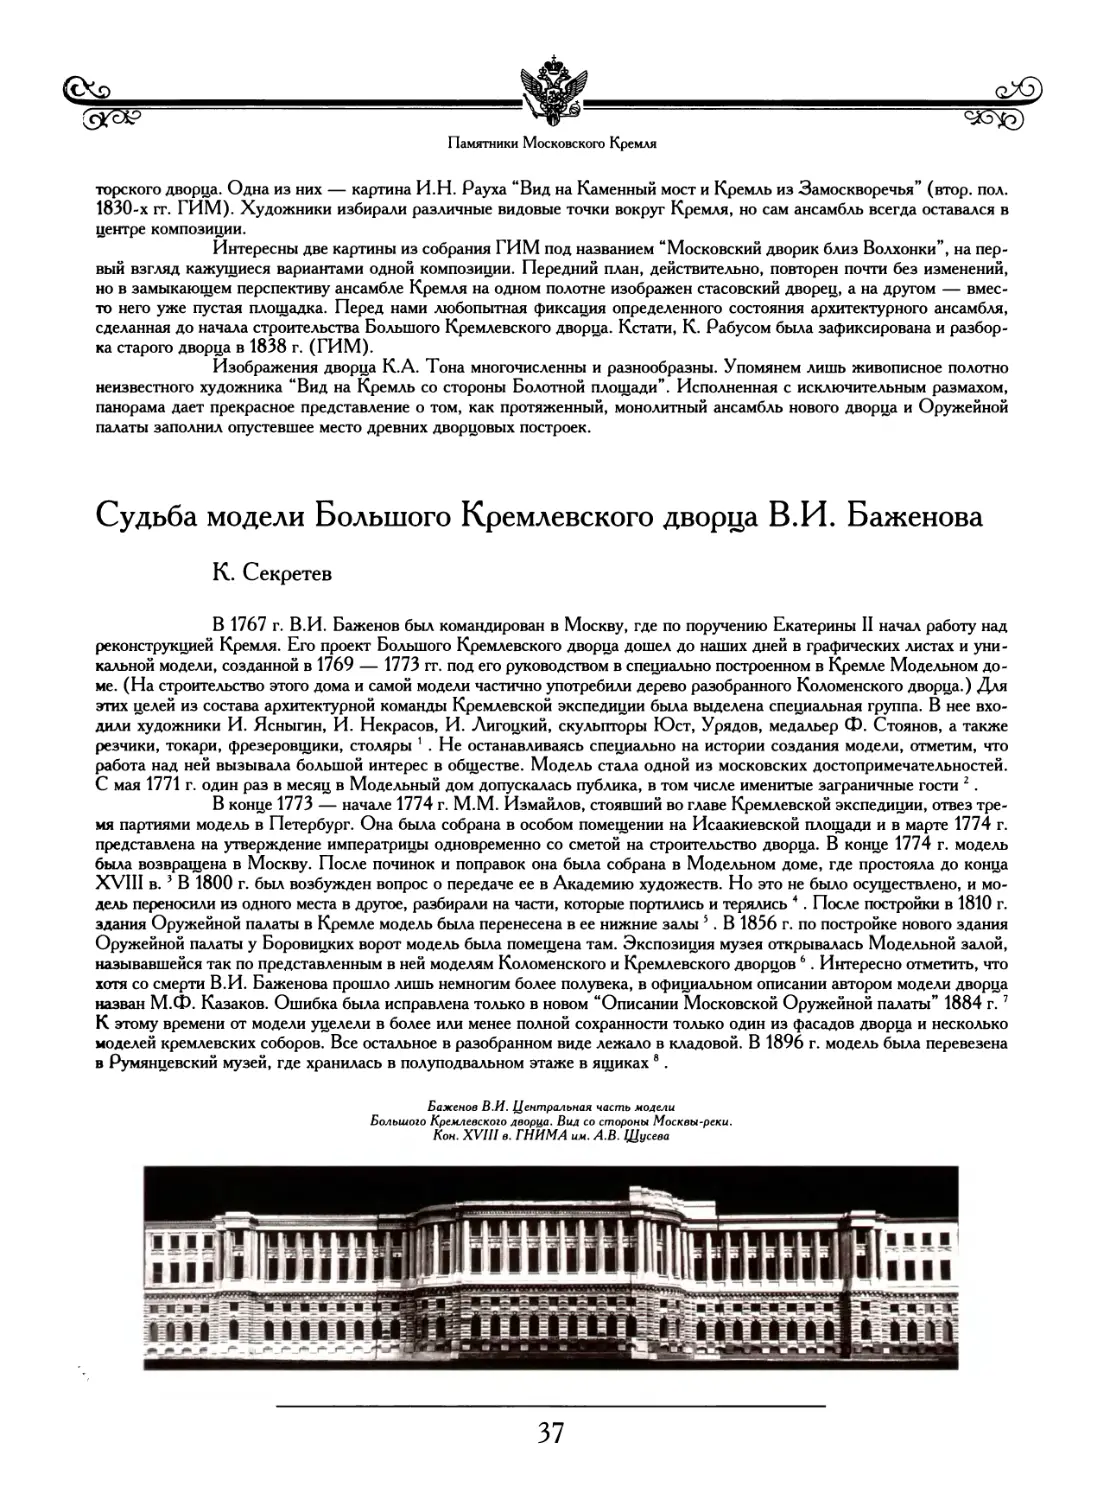 Судьба модели Большого Кремлевского дворца В.И. Баженова